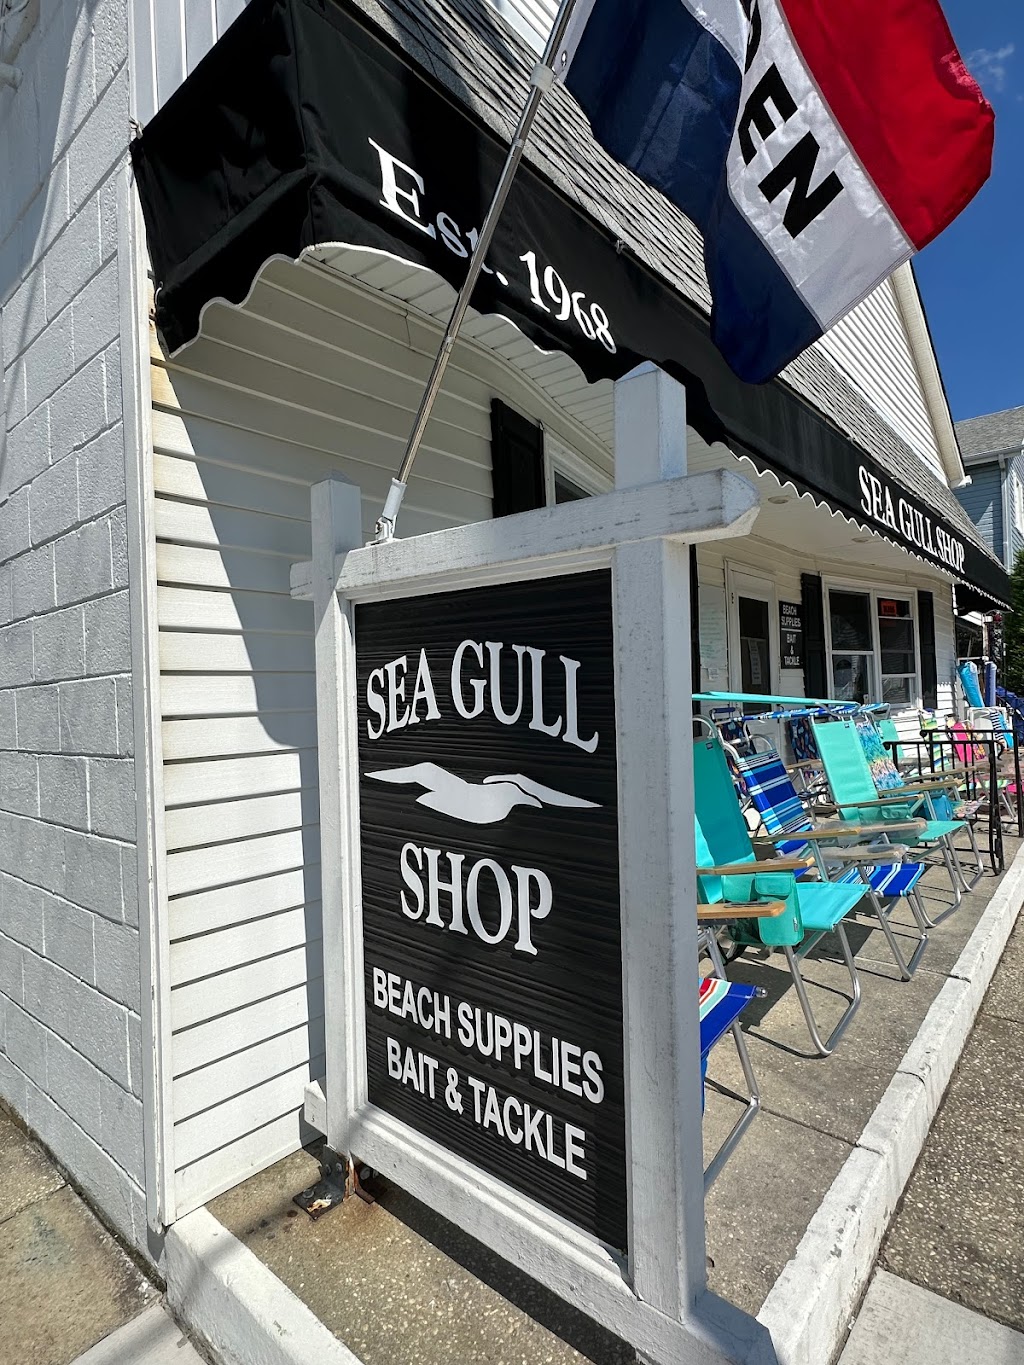 Sea Gull Shop | 309 E 55th St, Ocean City, NJ 08226 | Phone: (609) 398-3623